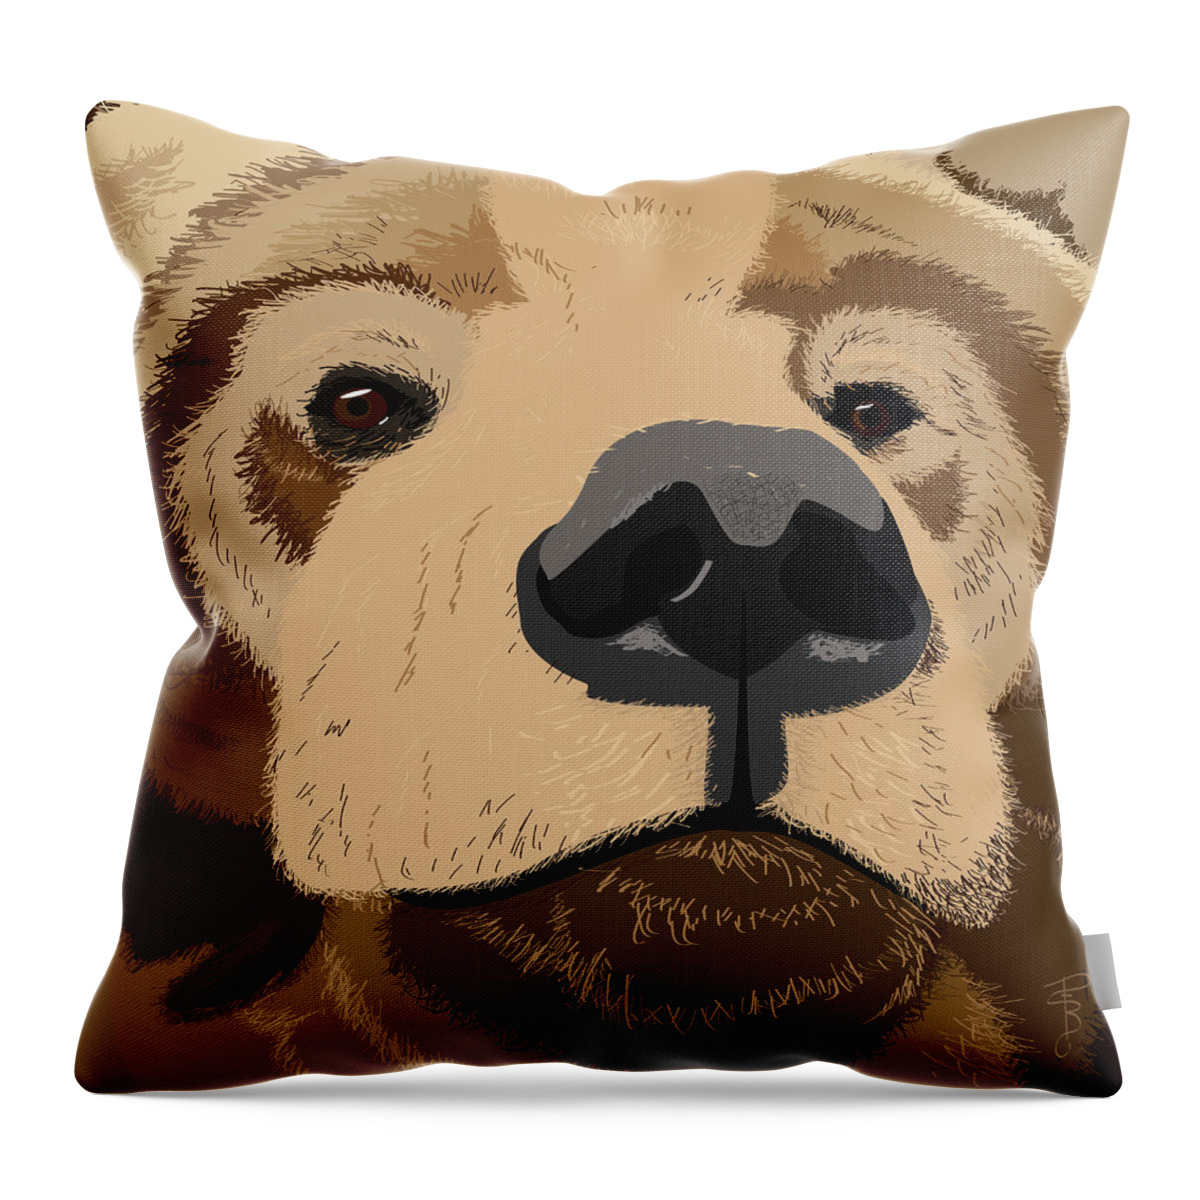 Bear Throw Pillow featuring the digital art Bear Face by Debra Baldwin